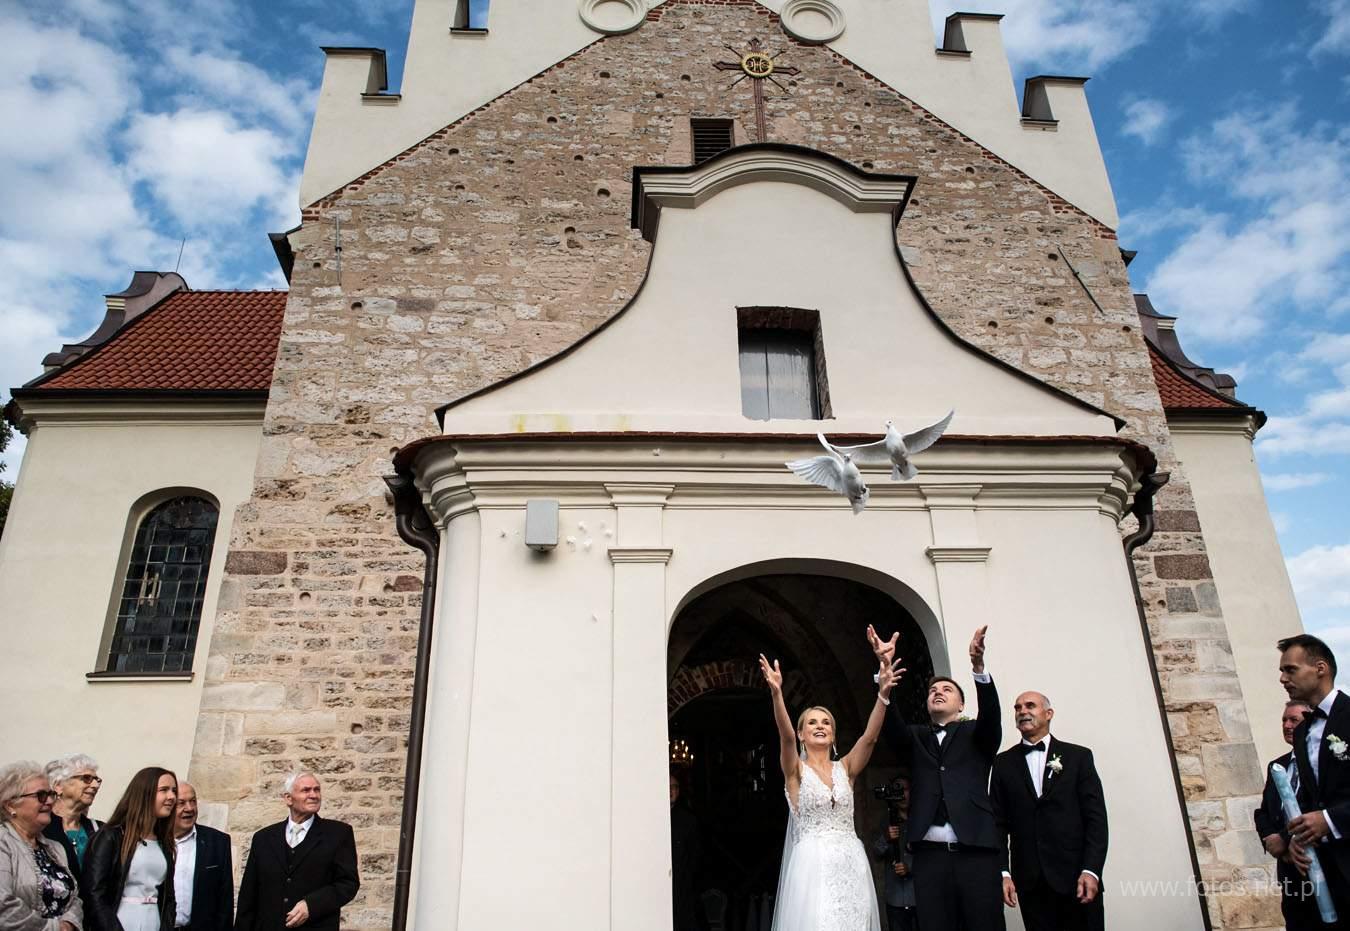 Wesele i sesja ślubna na zamku i w ogrodzie zamkowym Zamku Gutów. Fotografia ślubna Kalisz